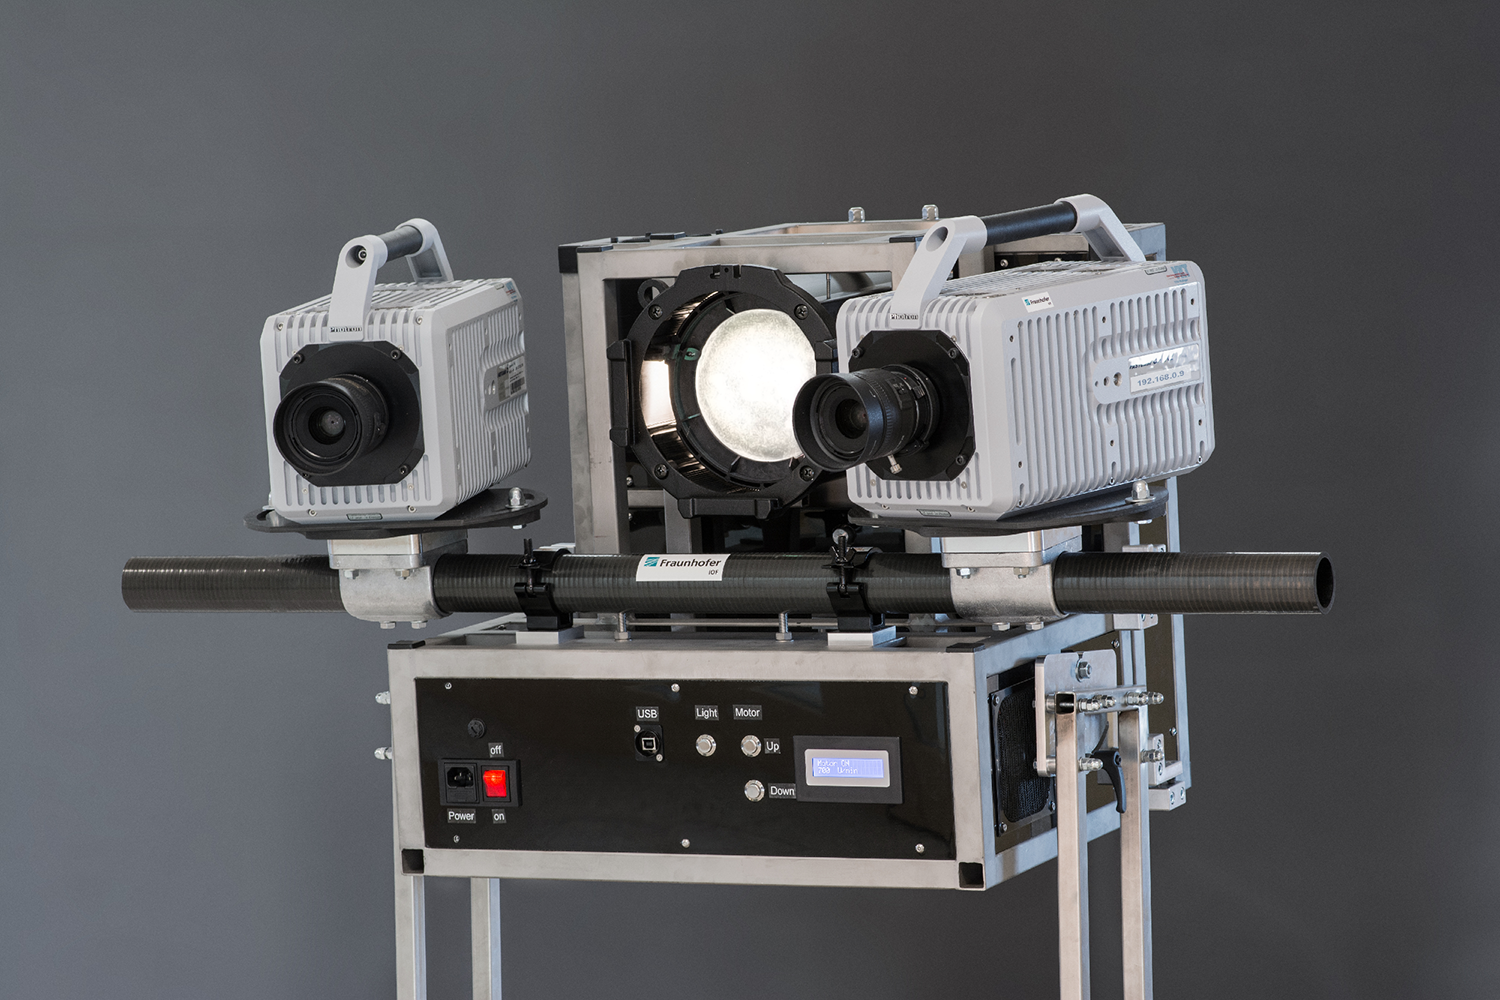 GOBO-projektionsbasierter 3D-Sensor. Der High-Speed-GOBO-Projektor liefert eine hohe Strahlungsleistung, erfordert keine Synchronisation mit den Kameras und besteht aus wenigen Komponenten, die vergleichsweise einfach herzustellen und zu montieren sind.